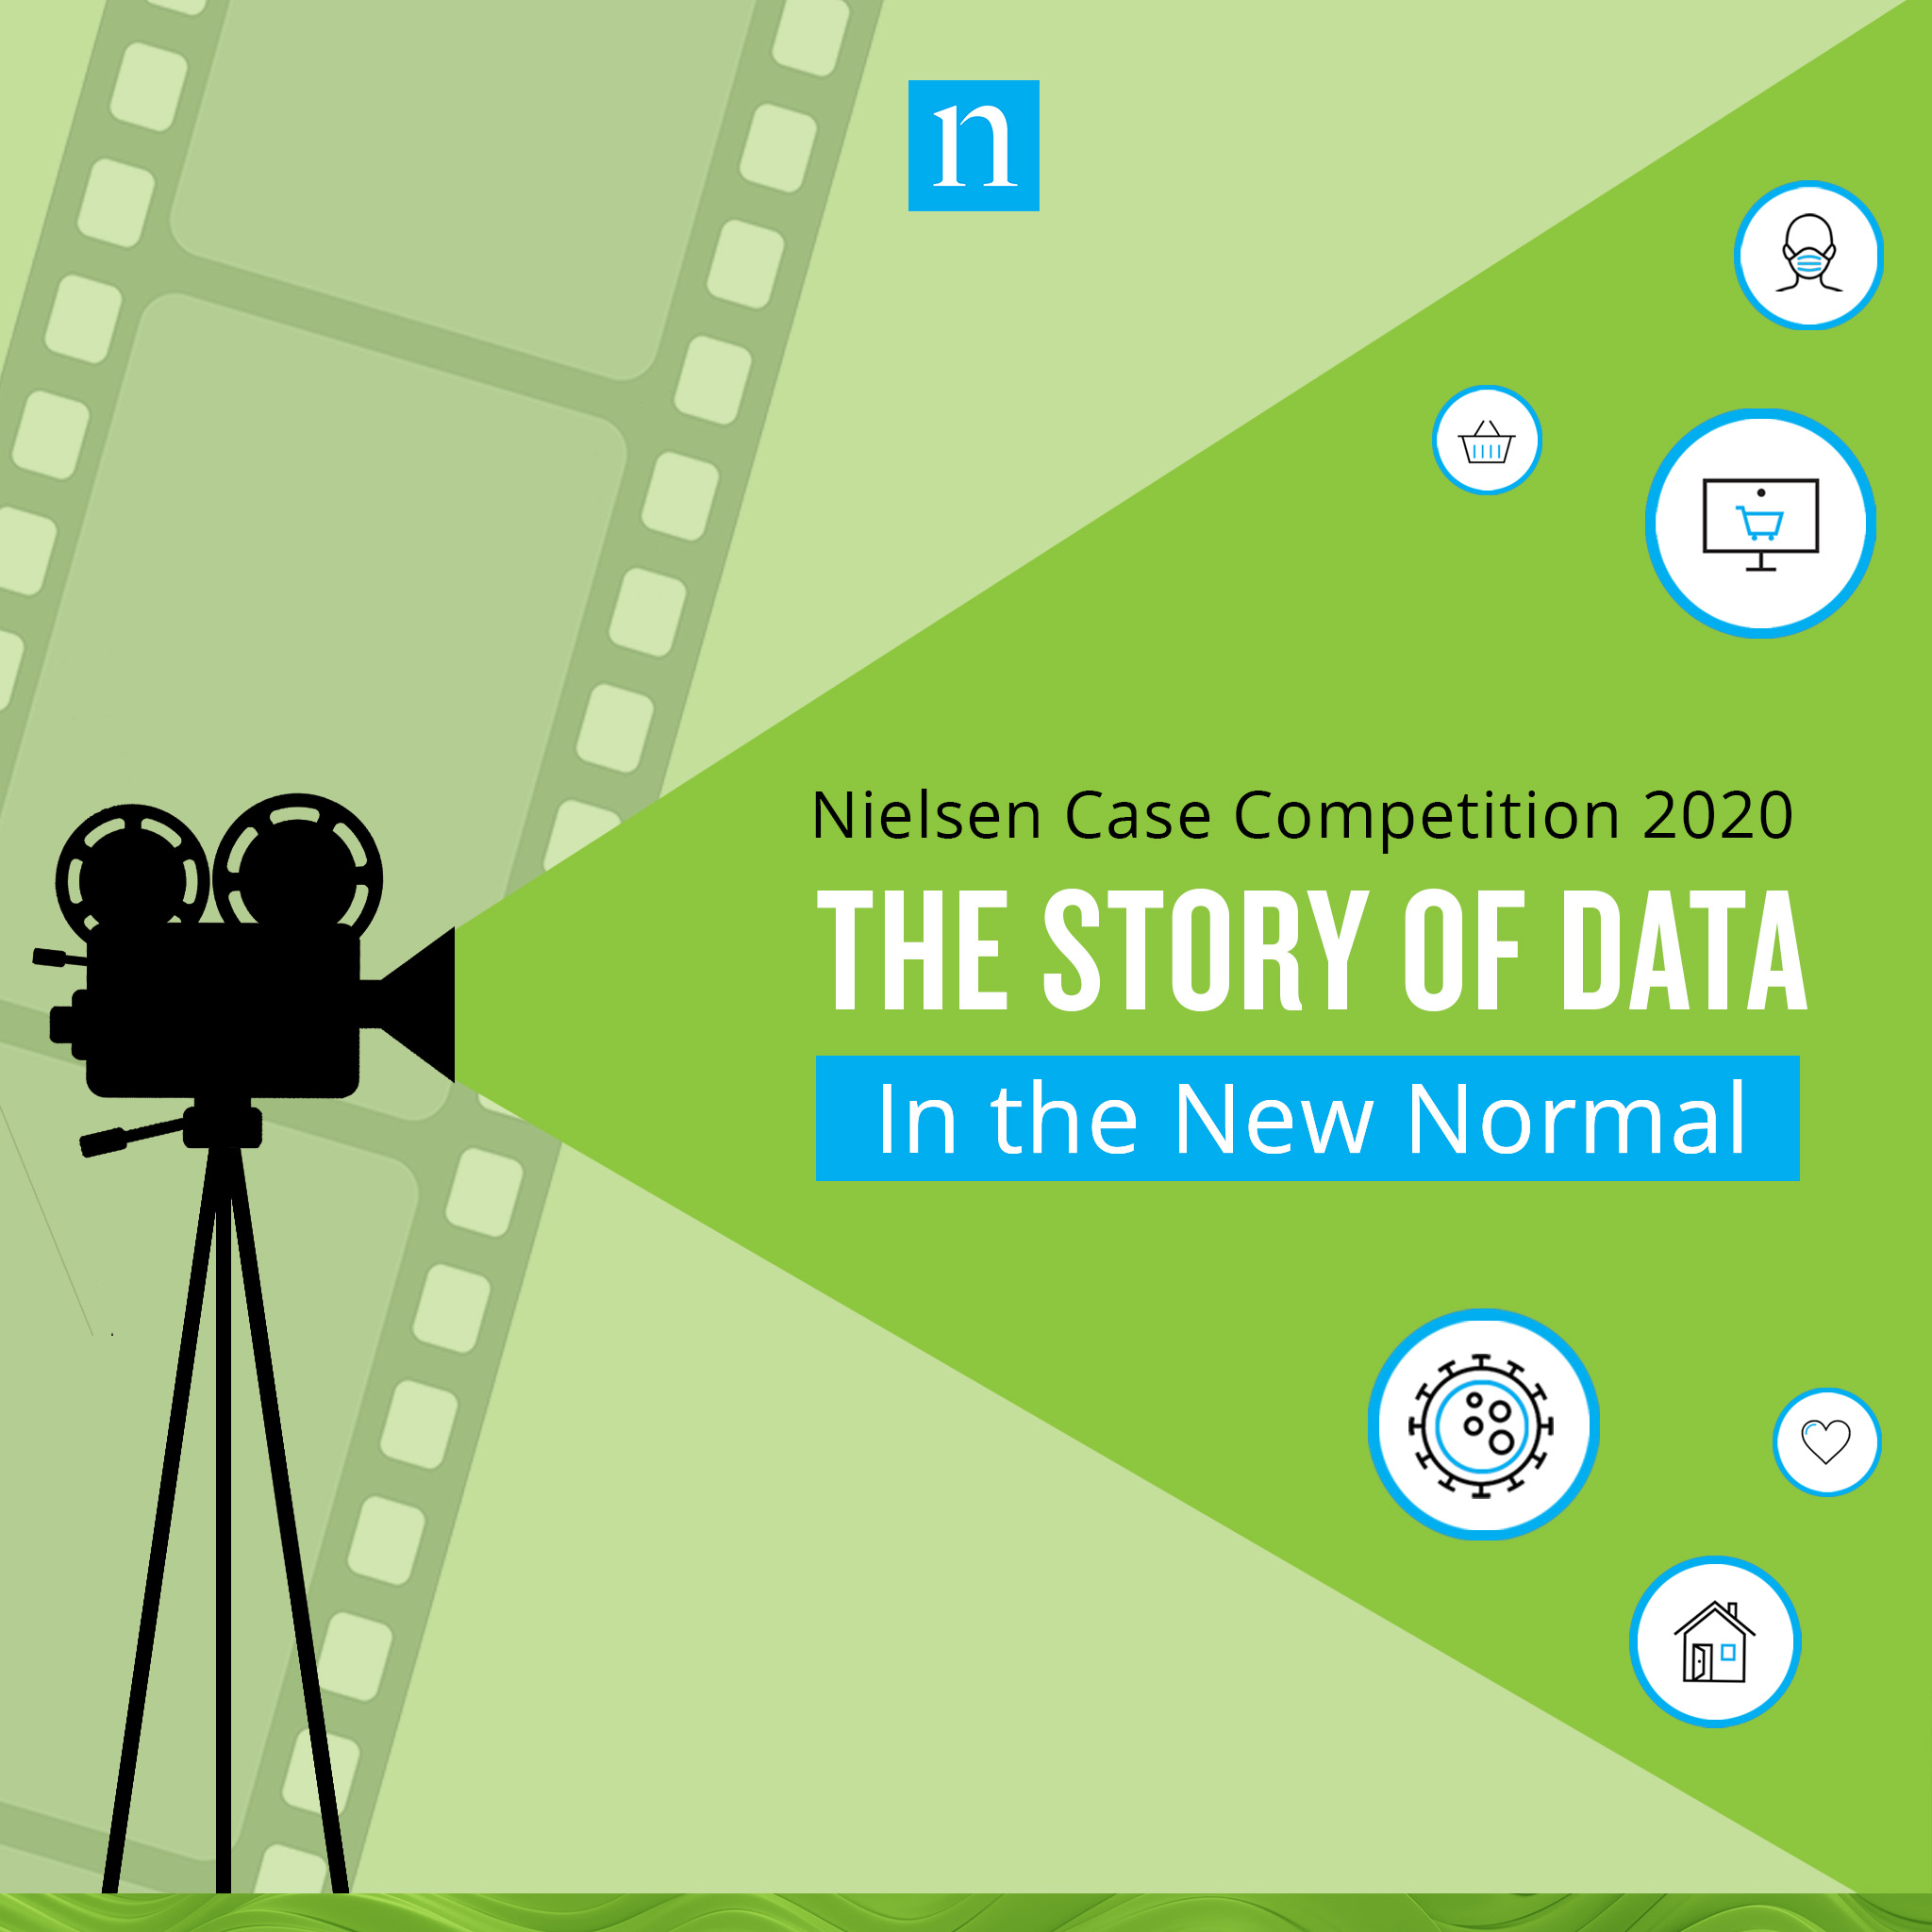 Chương trình Nielsen Case Competition 2020 (NCC)